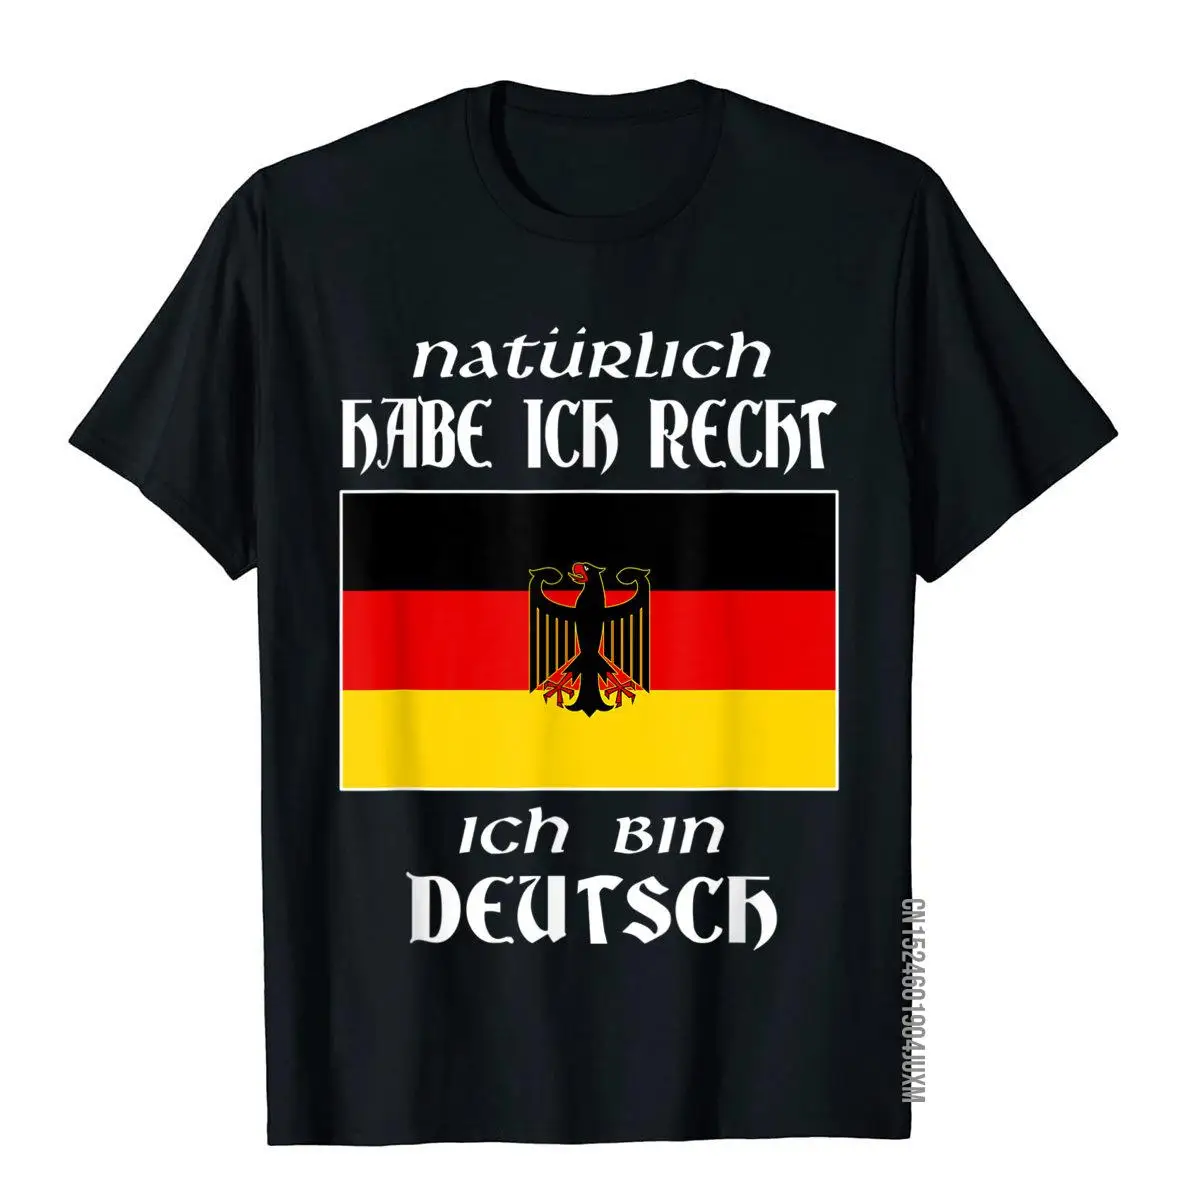 

Ich Bin Deutsch T-Shirt Funny German Language Germany Saying Geek Top T-Shirts Tops Shirt For Men Funky Cotton T Shirt